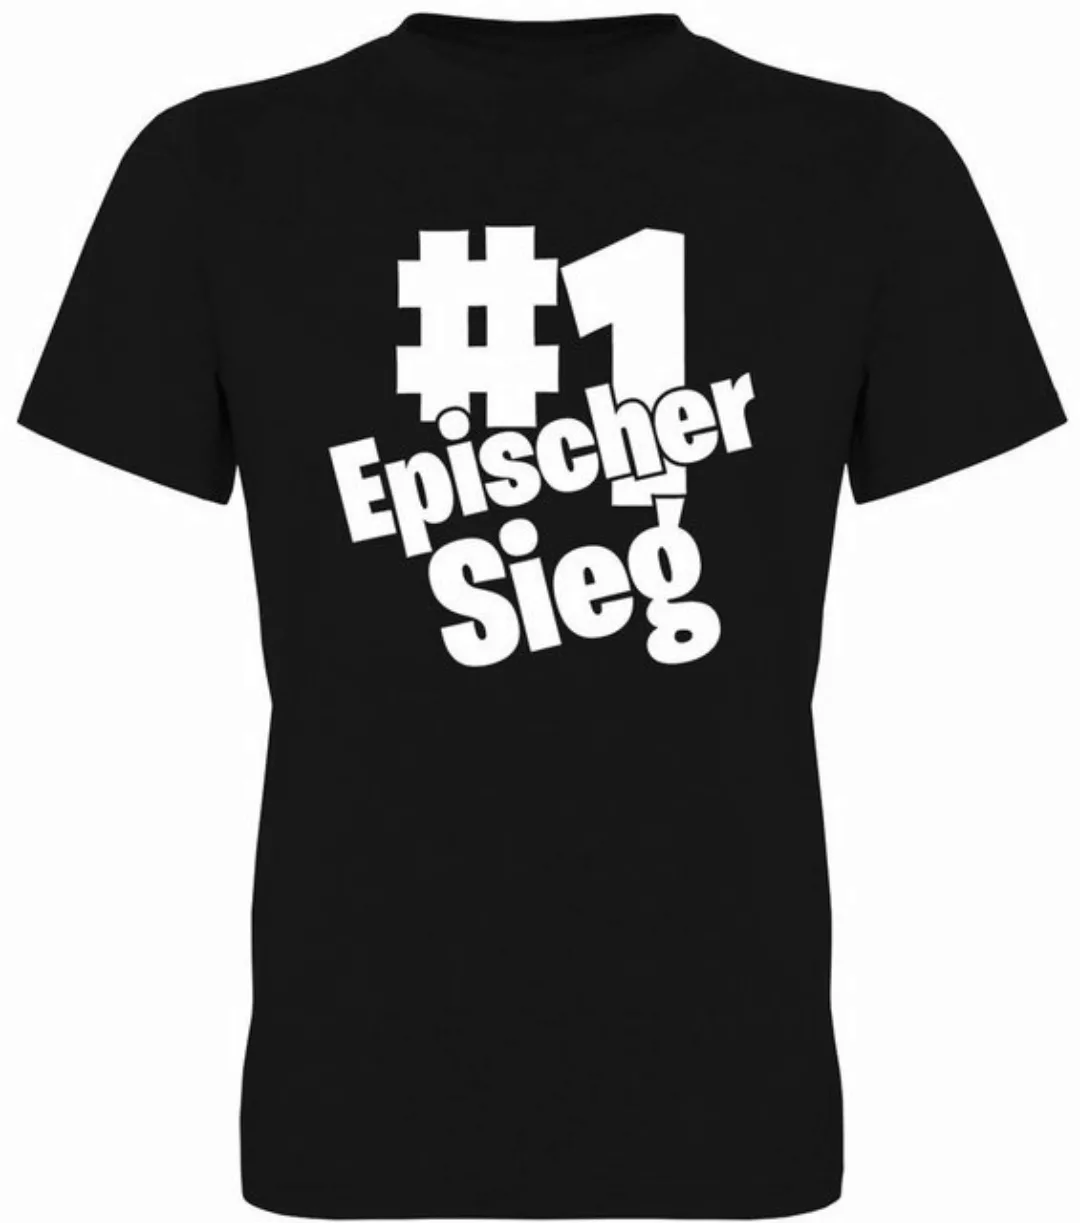 G-graphics T-Shirt #1 Epischer Sieg Herren T-Shirt, mit trendigem Frontprin günstig online kaufen